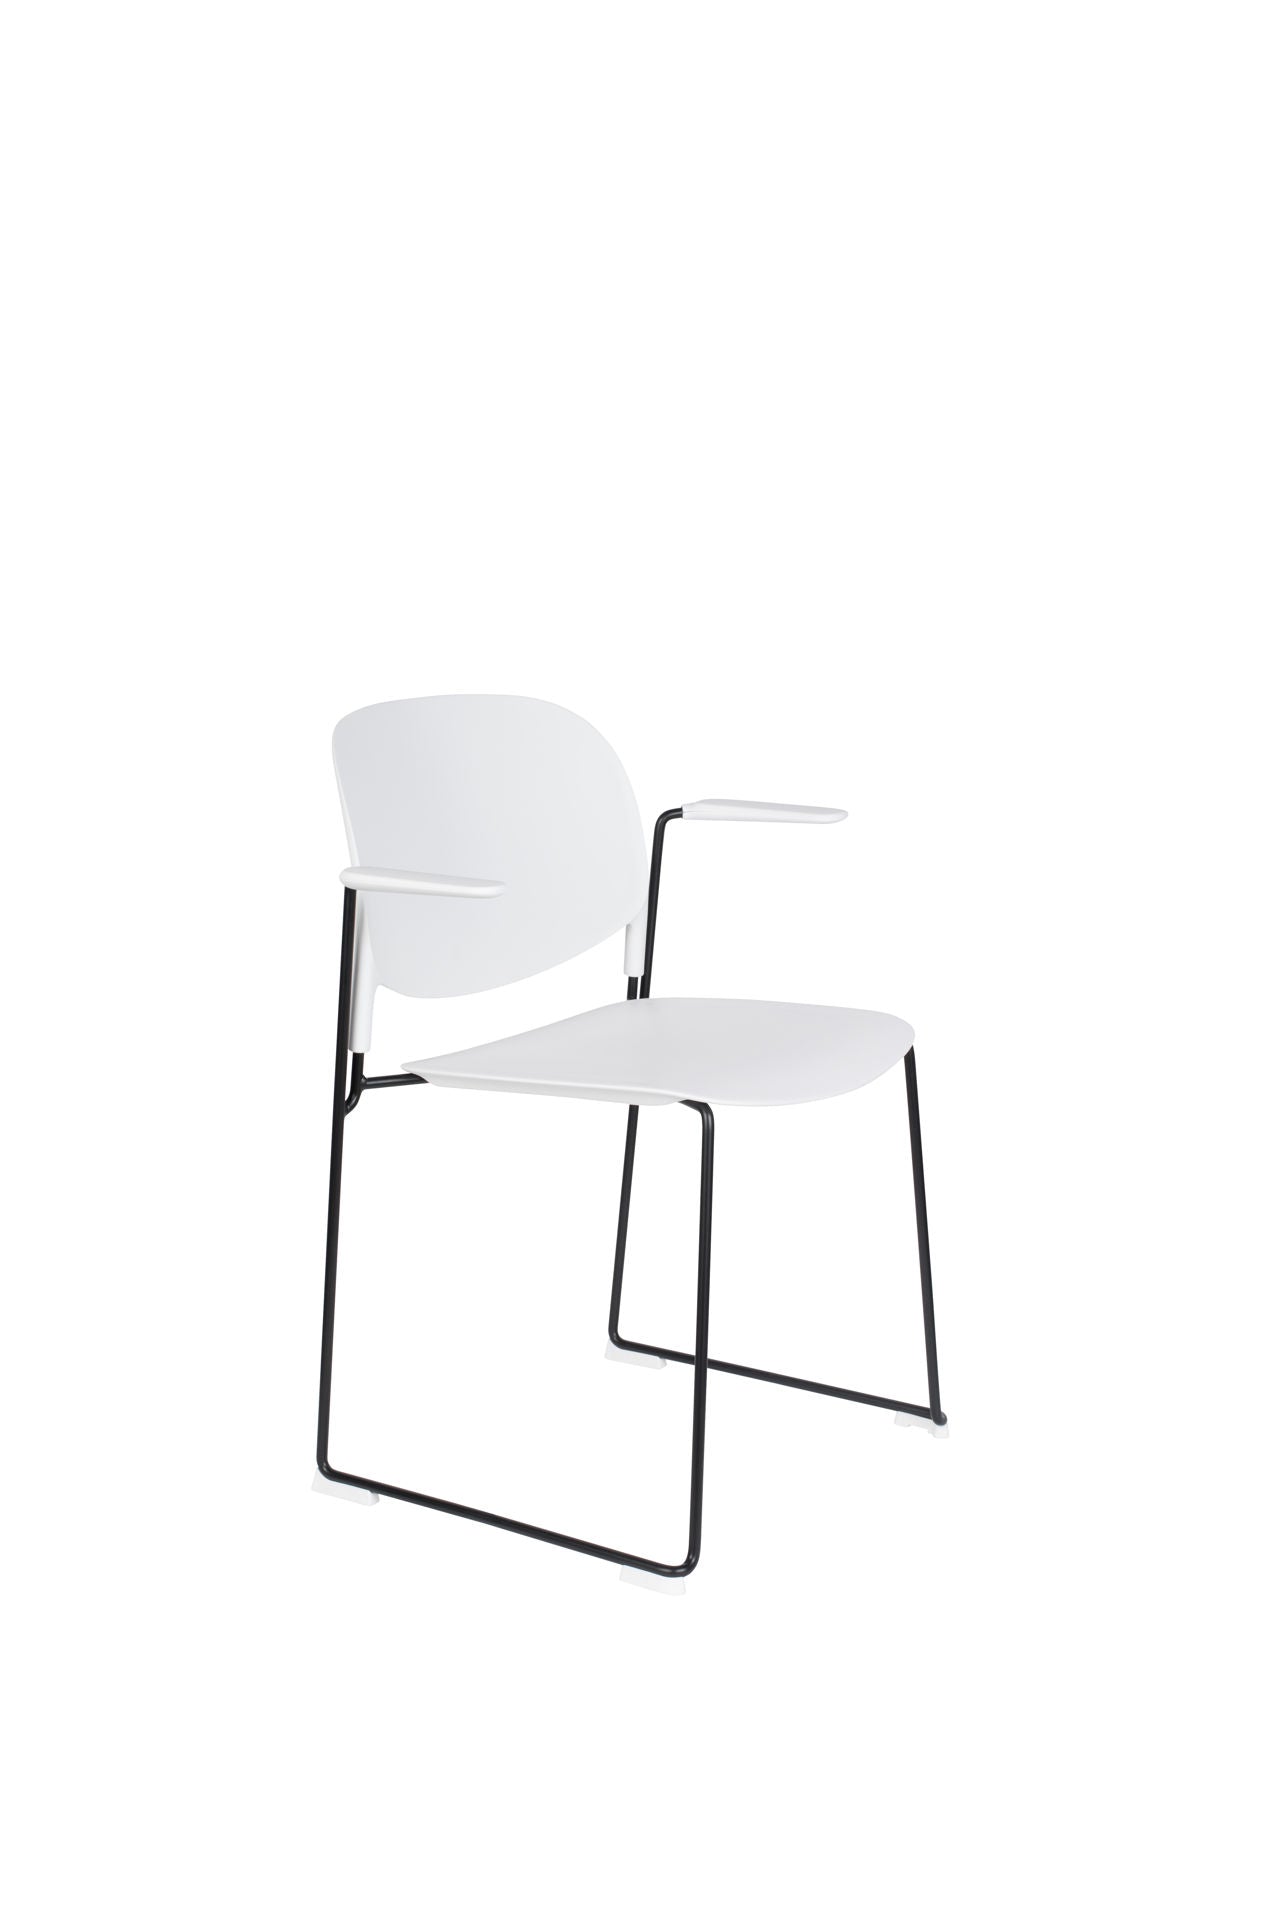 Nancy's Frostburg Chair - Rétro - Blanc, Noir - Polypropylène, Acier, Plastique - 53 cm x 63,5 cm x 80,5 cm